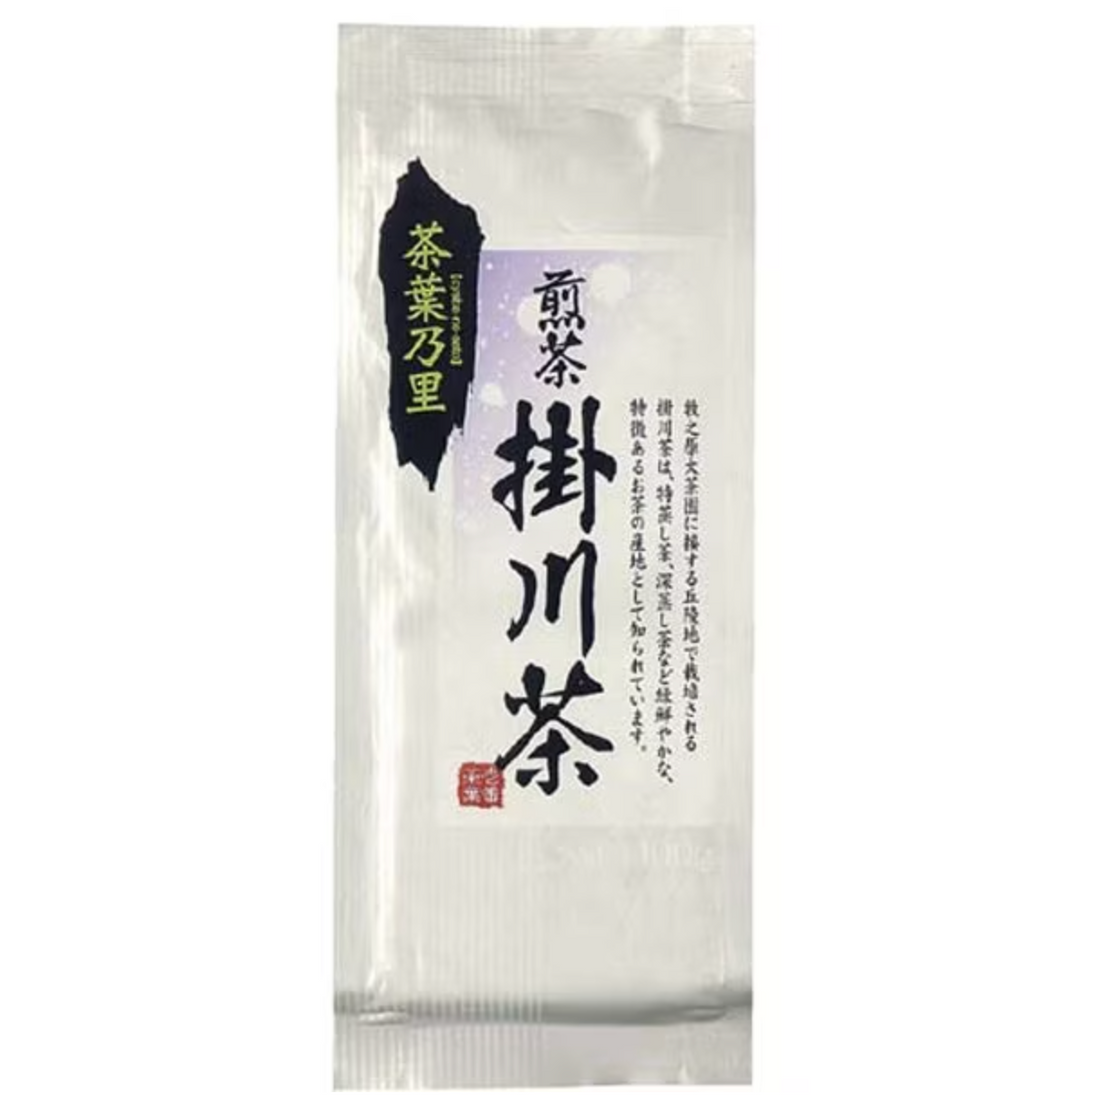 Ochanomaruko Tea Leaf Nosato Shizuoka Kakegawa Tea 100g